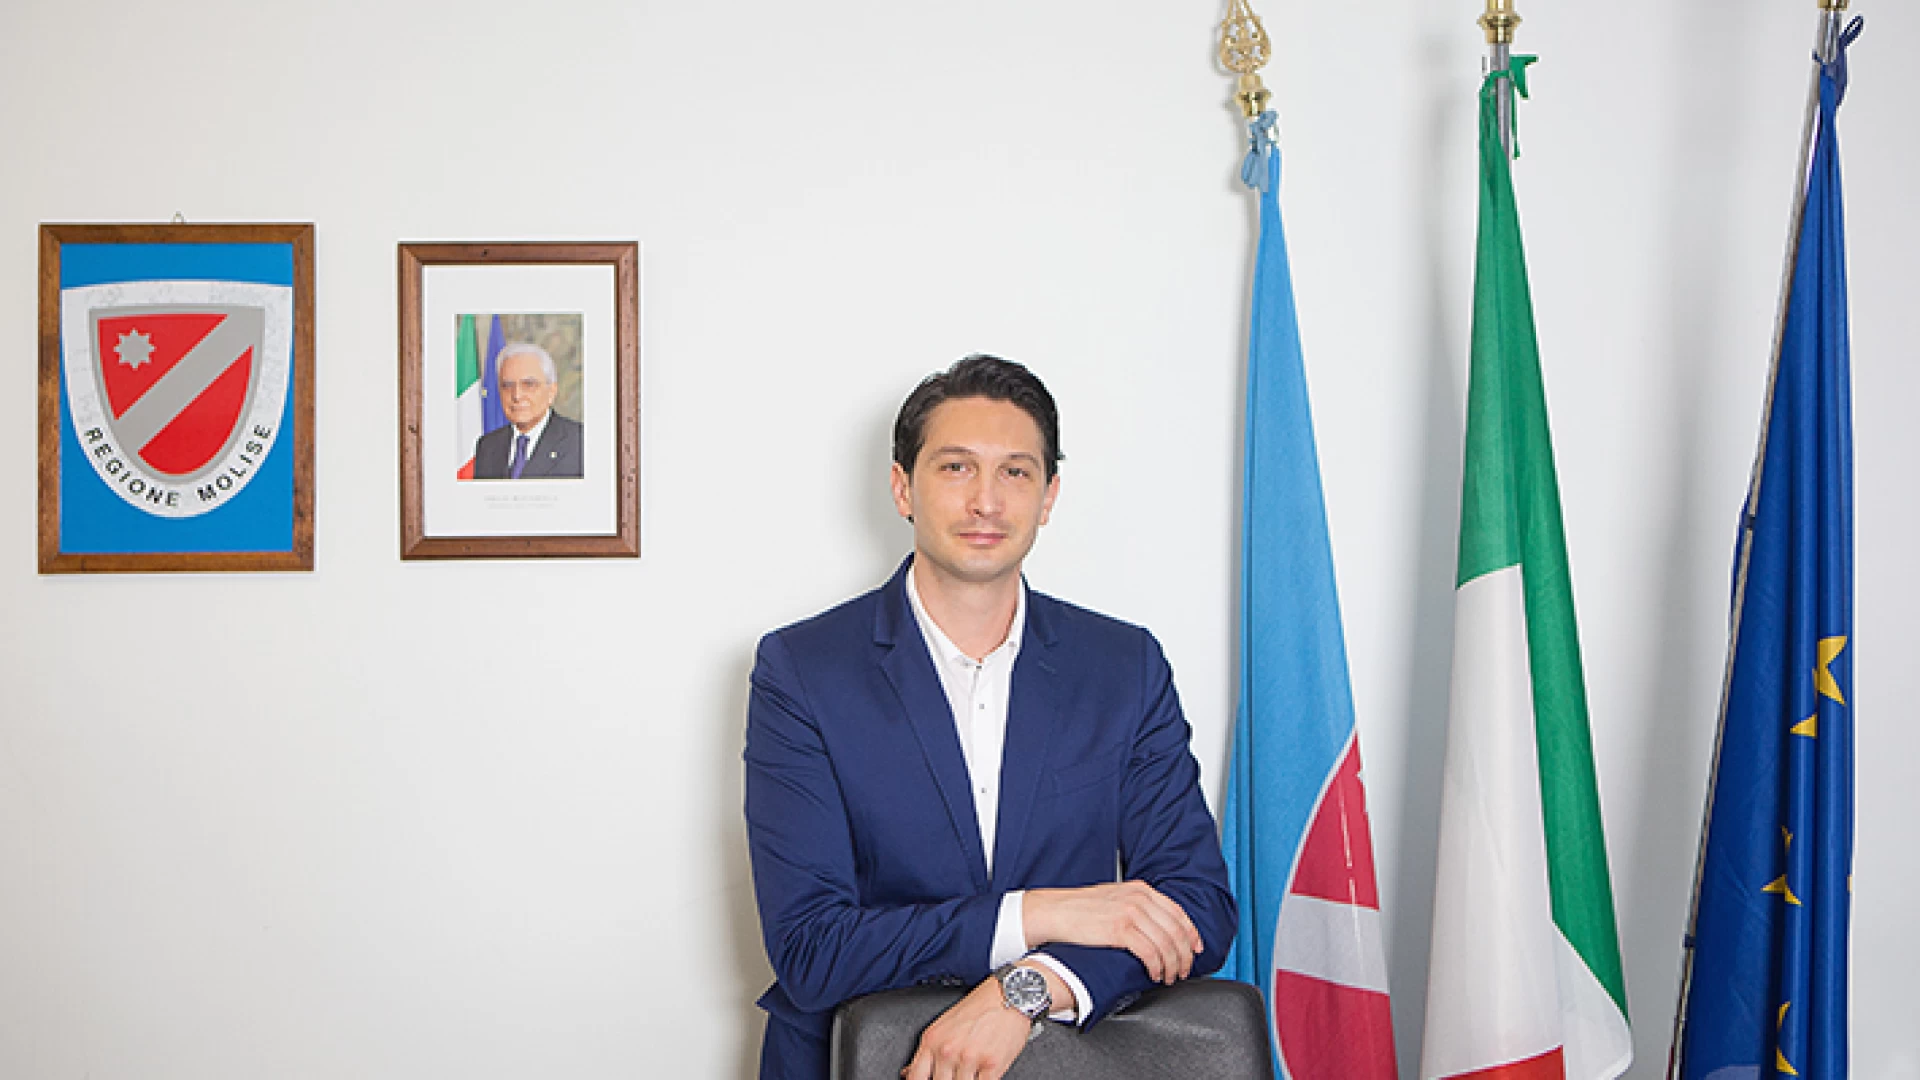 Piano regolatore di Isernia e Diga di Chiauci, i progetti verranno seguiti dal consigliere regionale Antonio Tedeschi nominato dalla terza commissione.